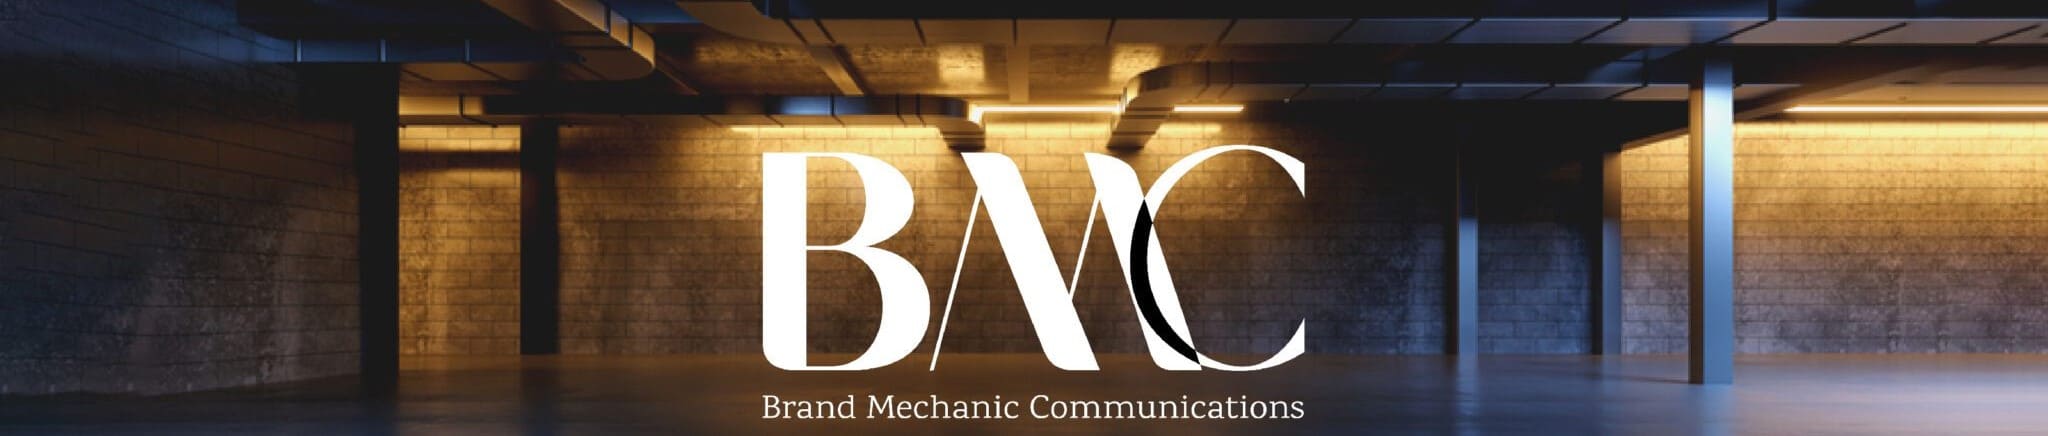 About BMC banner